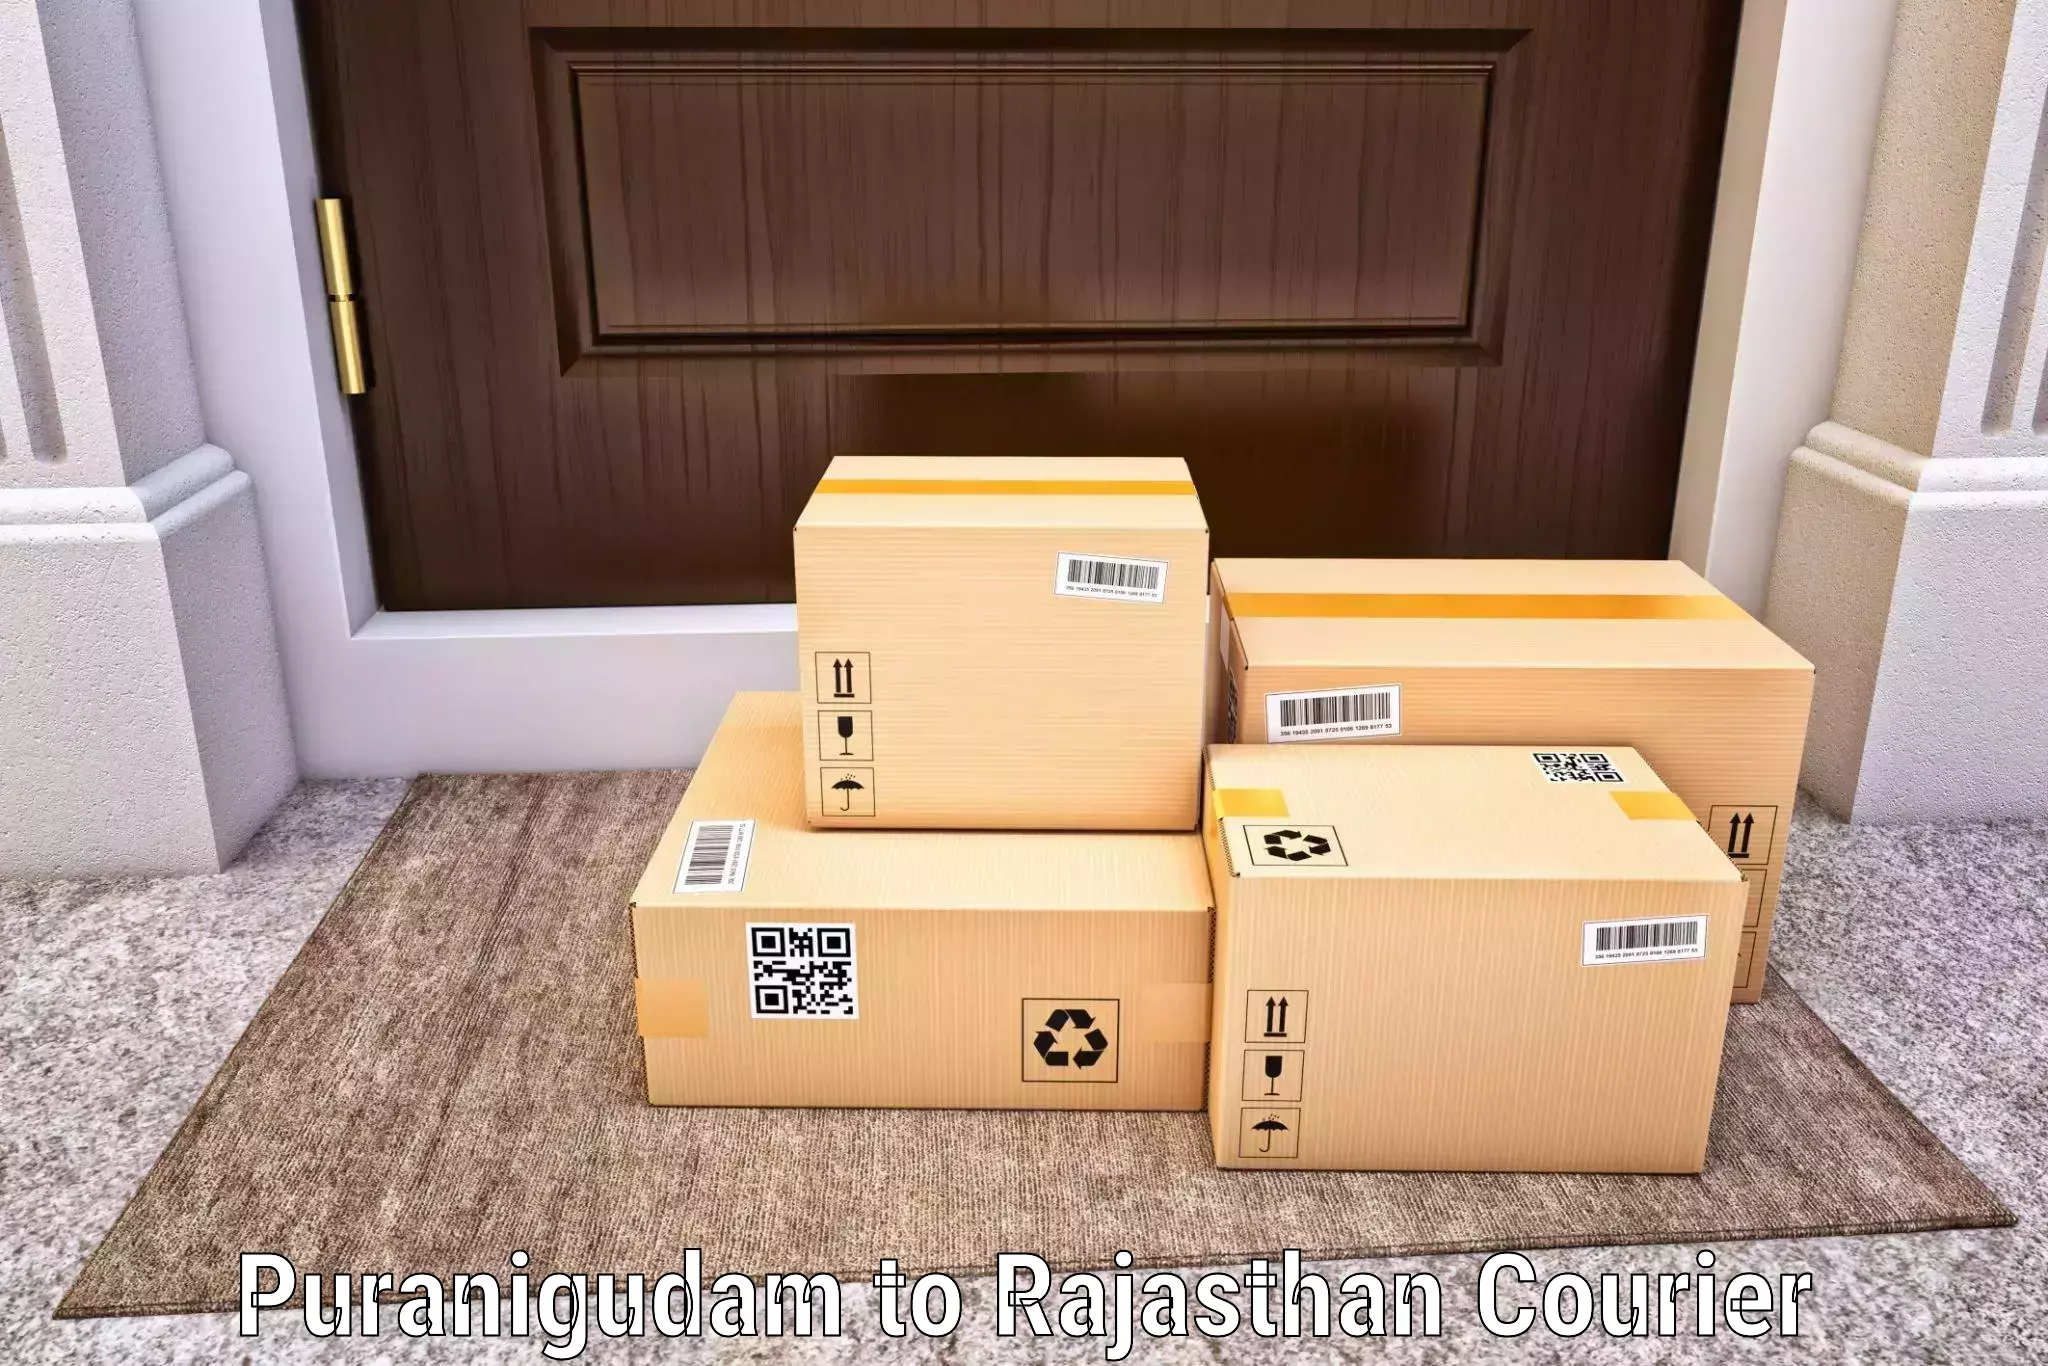 Personalized courier solutions Puranigudam to Sultana